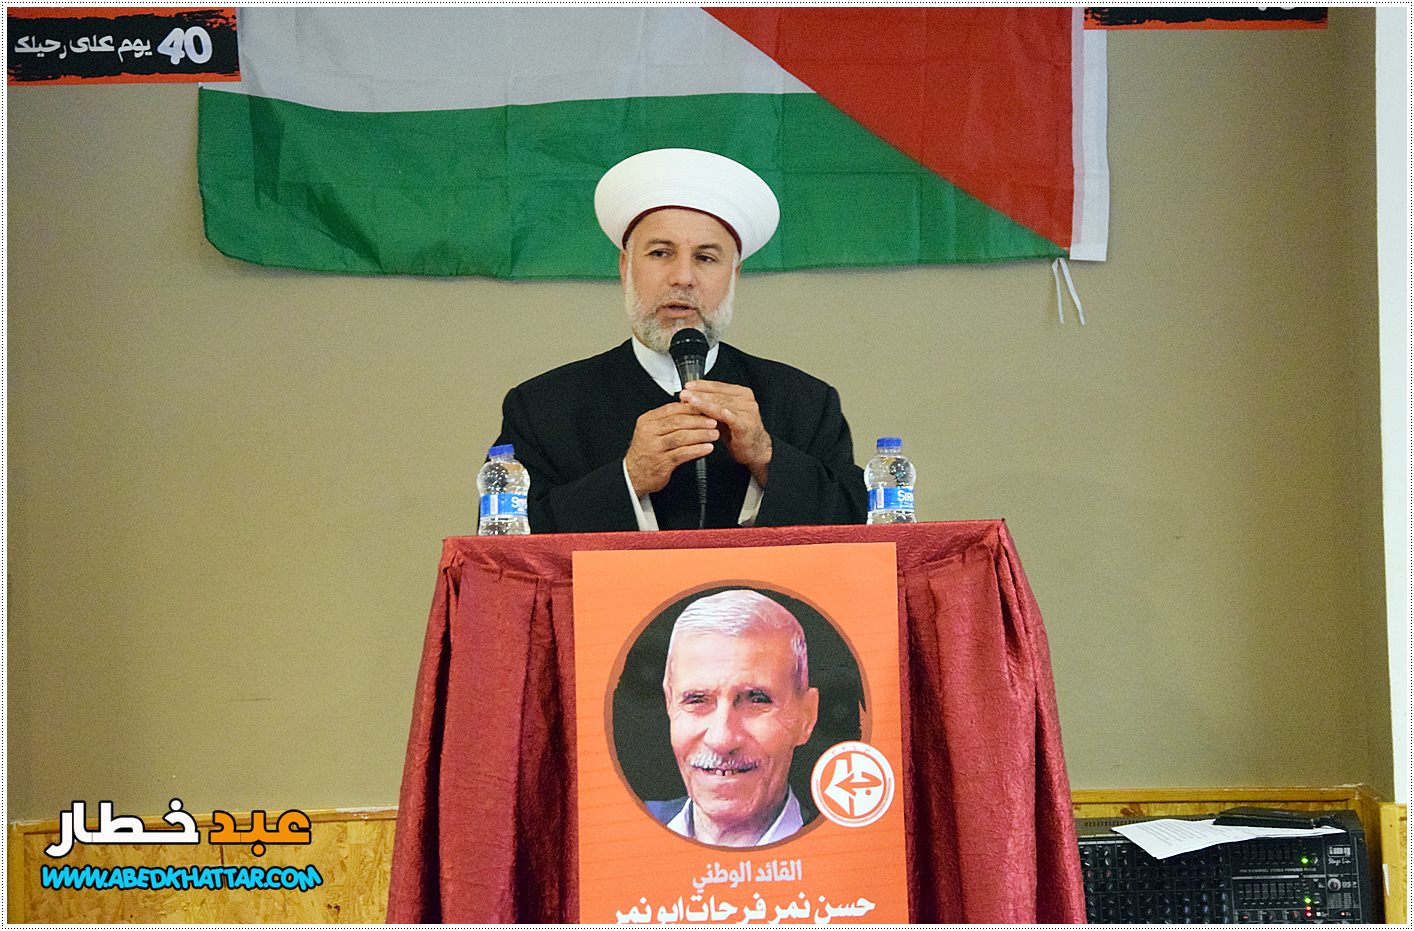 سماحة الشيخ عادل التركي عضو تجمع العلماء المسلمين في لبنان رئيس جمعية منتدى الوحدة للتعاون الاجتماعي